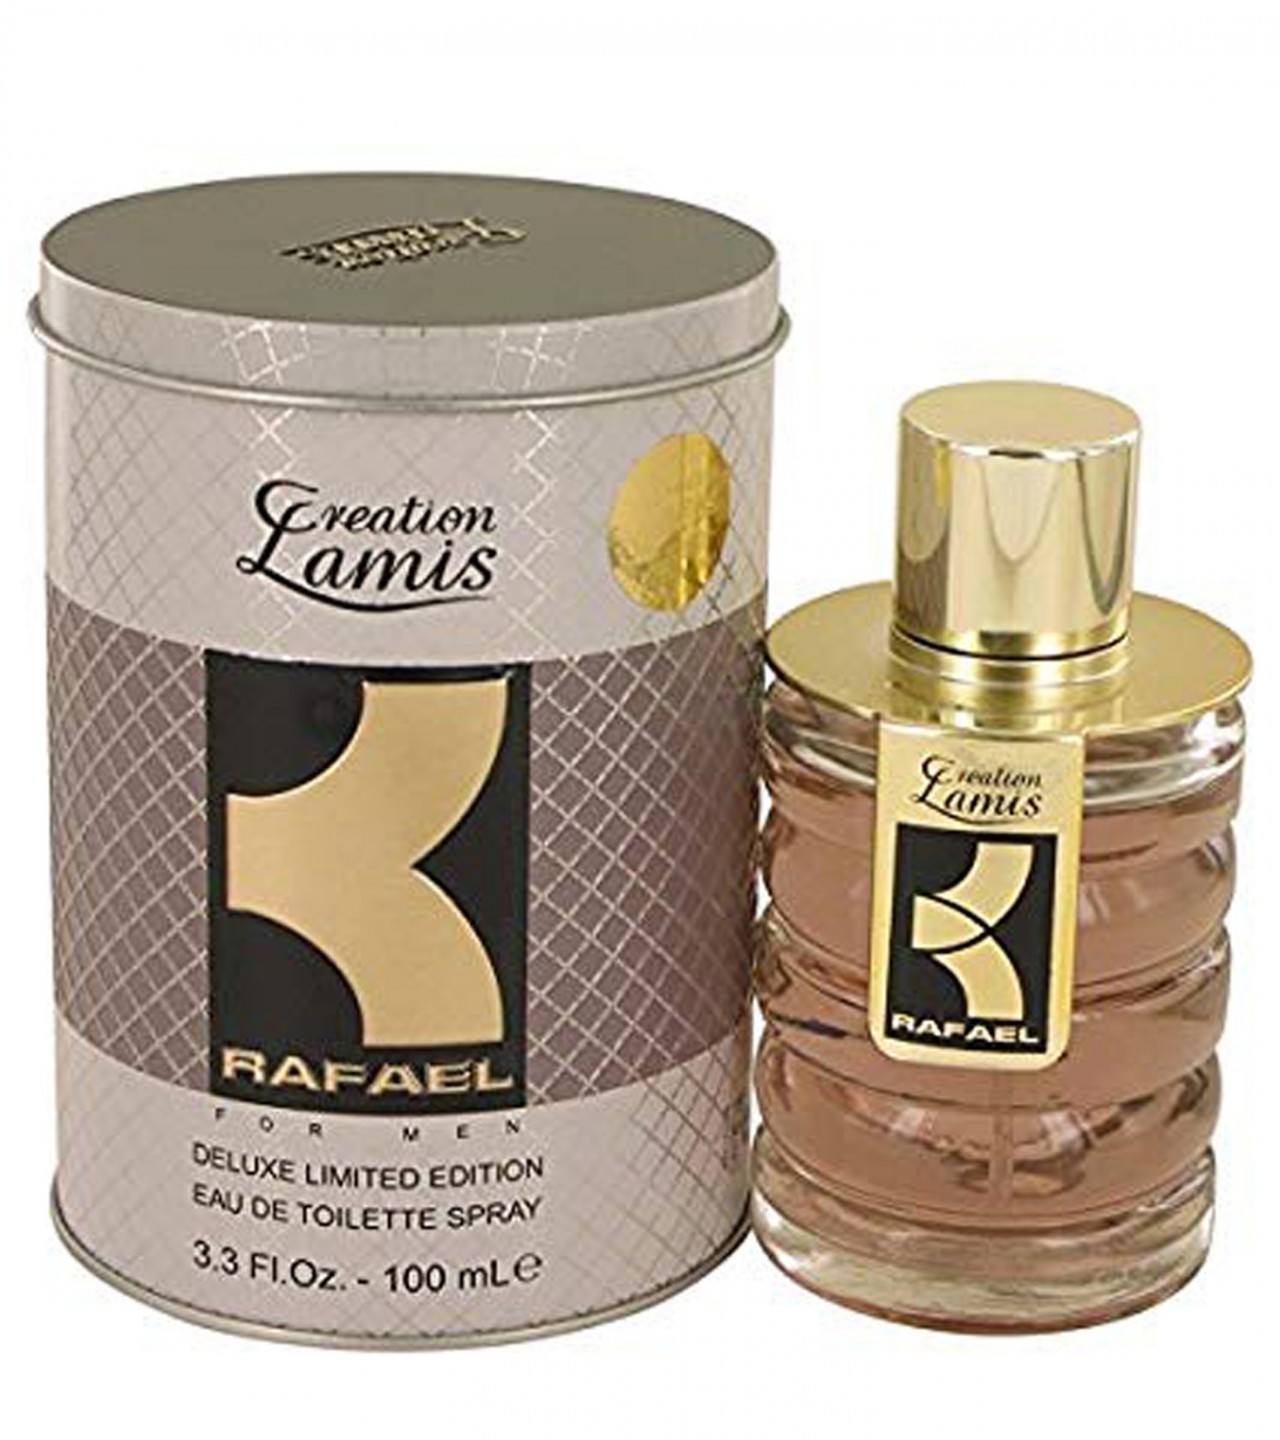 Creation Lamis Rafael Perfume For Men - 100 ml